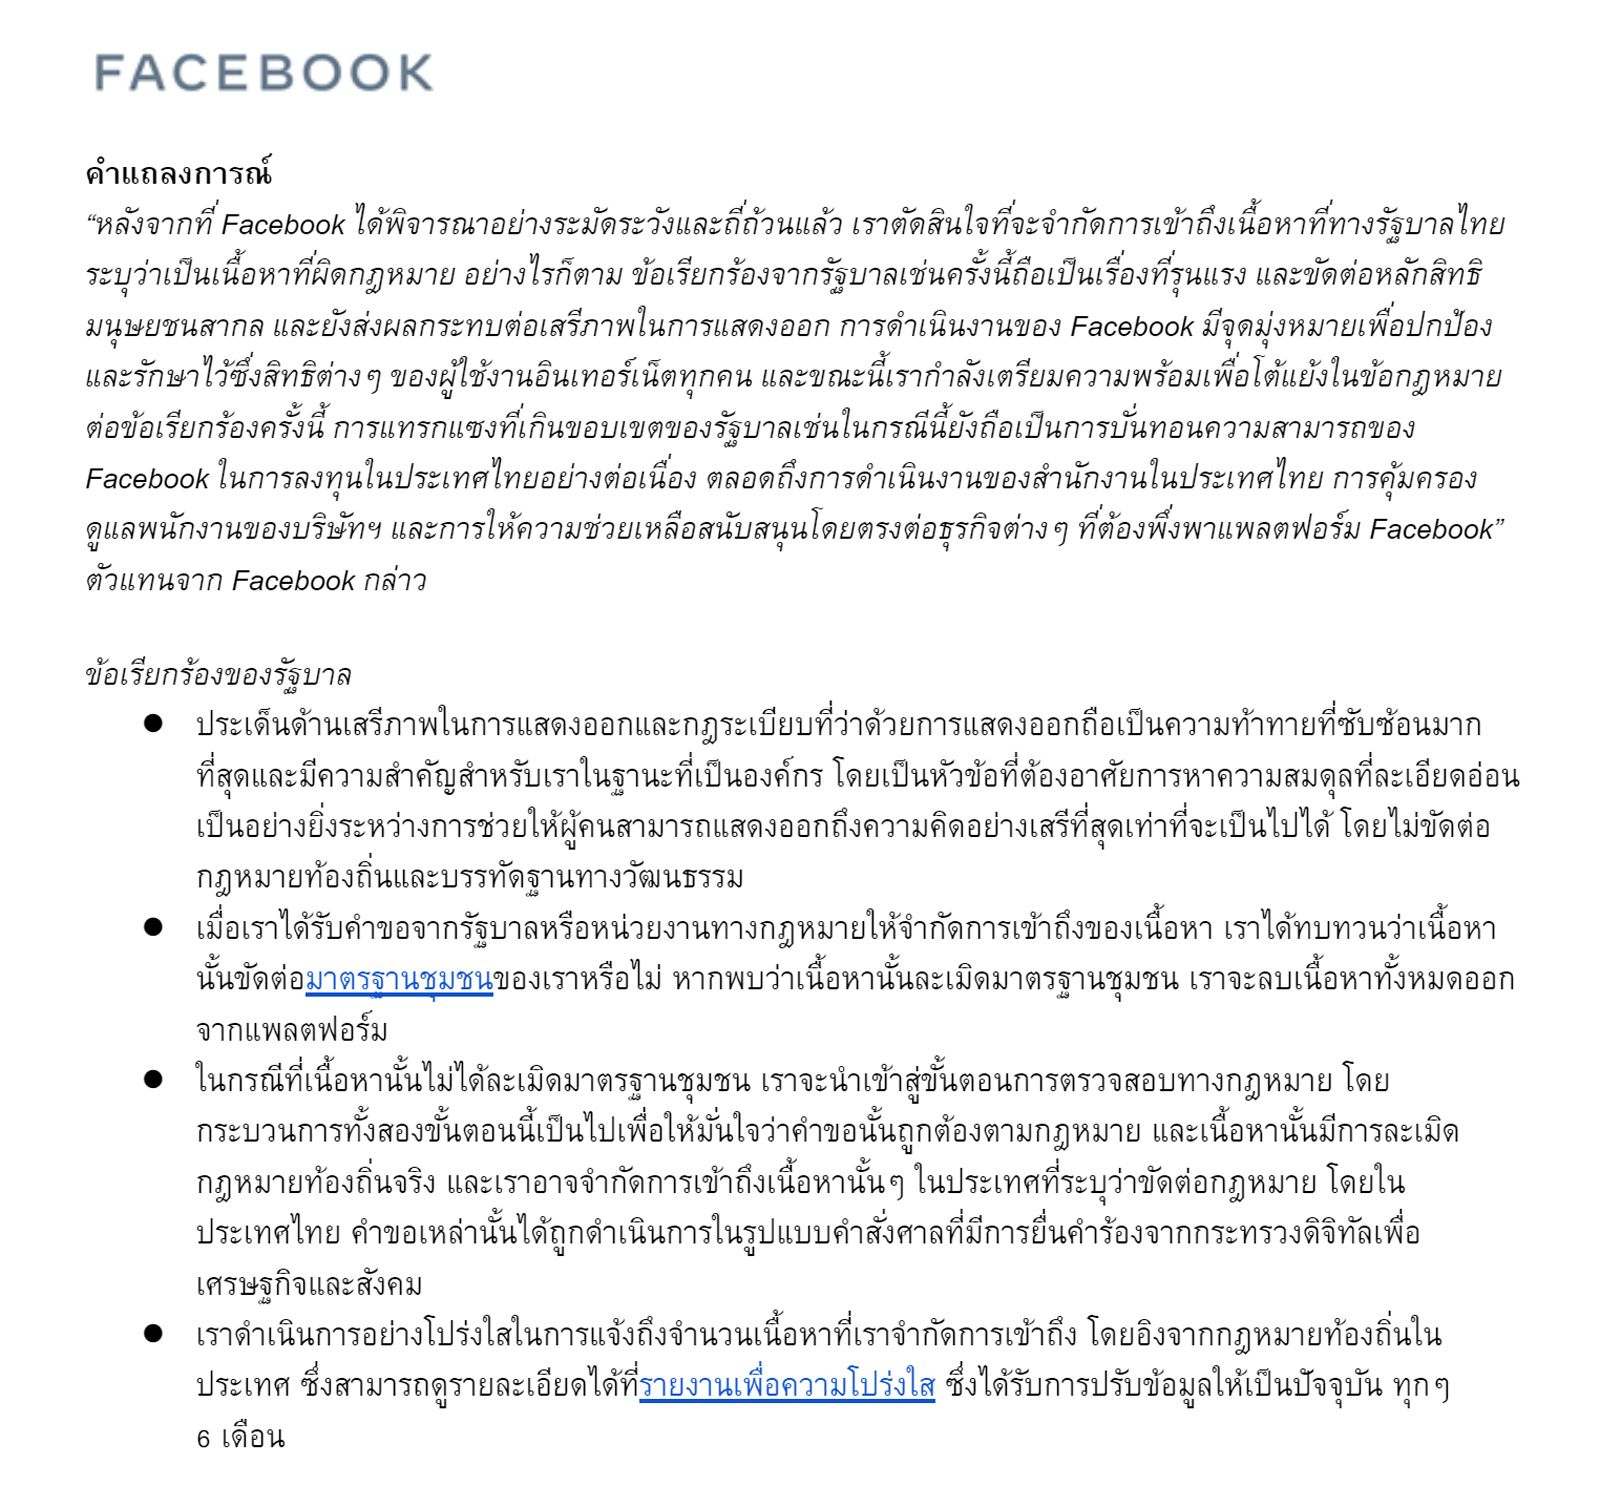 อ่านแถลงการณ์ Facebook หลังโดนแทรกแซง ระบุเป็นห่วงการลงทุน ธุรกิจที่พึ่งพาแพลตฟอร์ม และสวัสดิภาพพนักงานในไทย